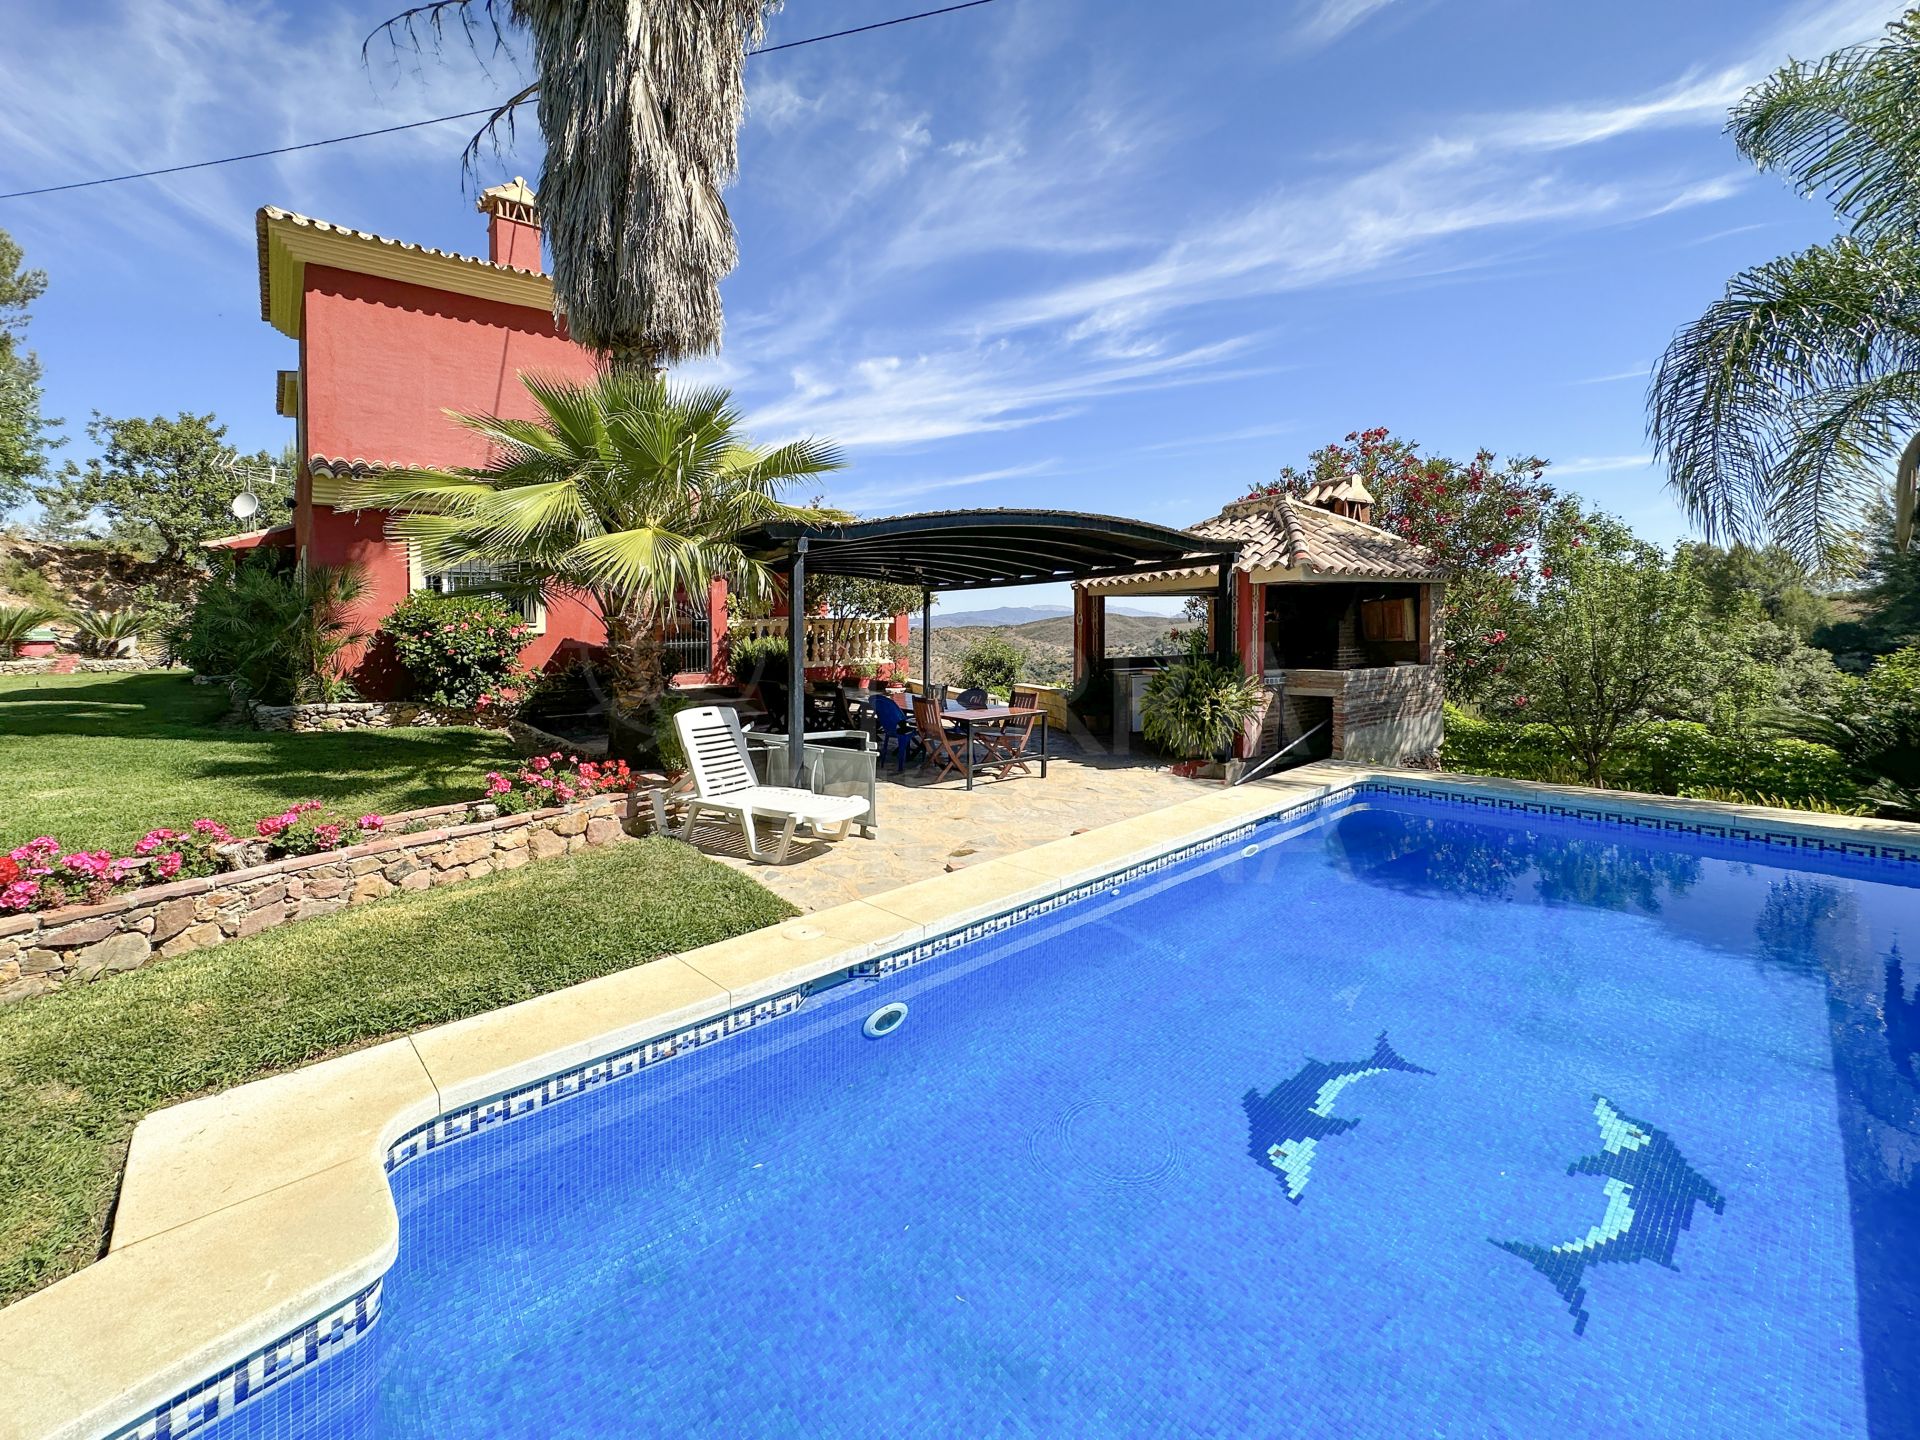 Fabulosa villa con 6 dormitorios y casa de huespedes se vende en Monda, Malaga